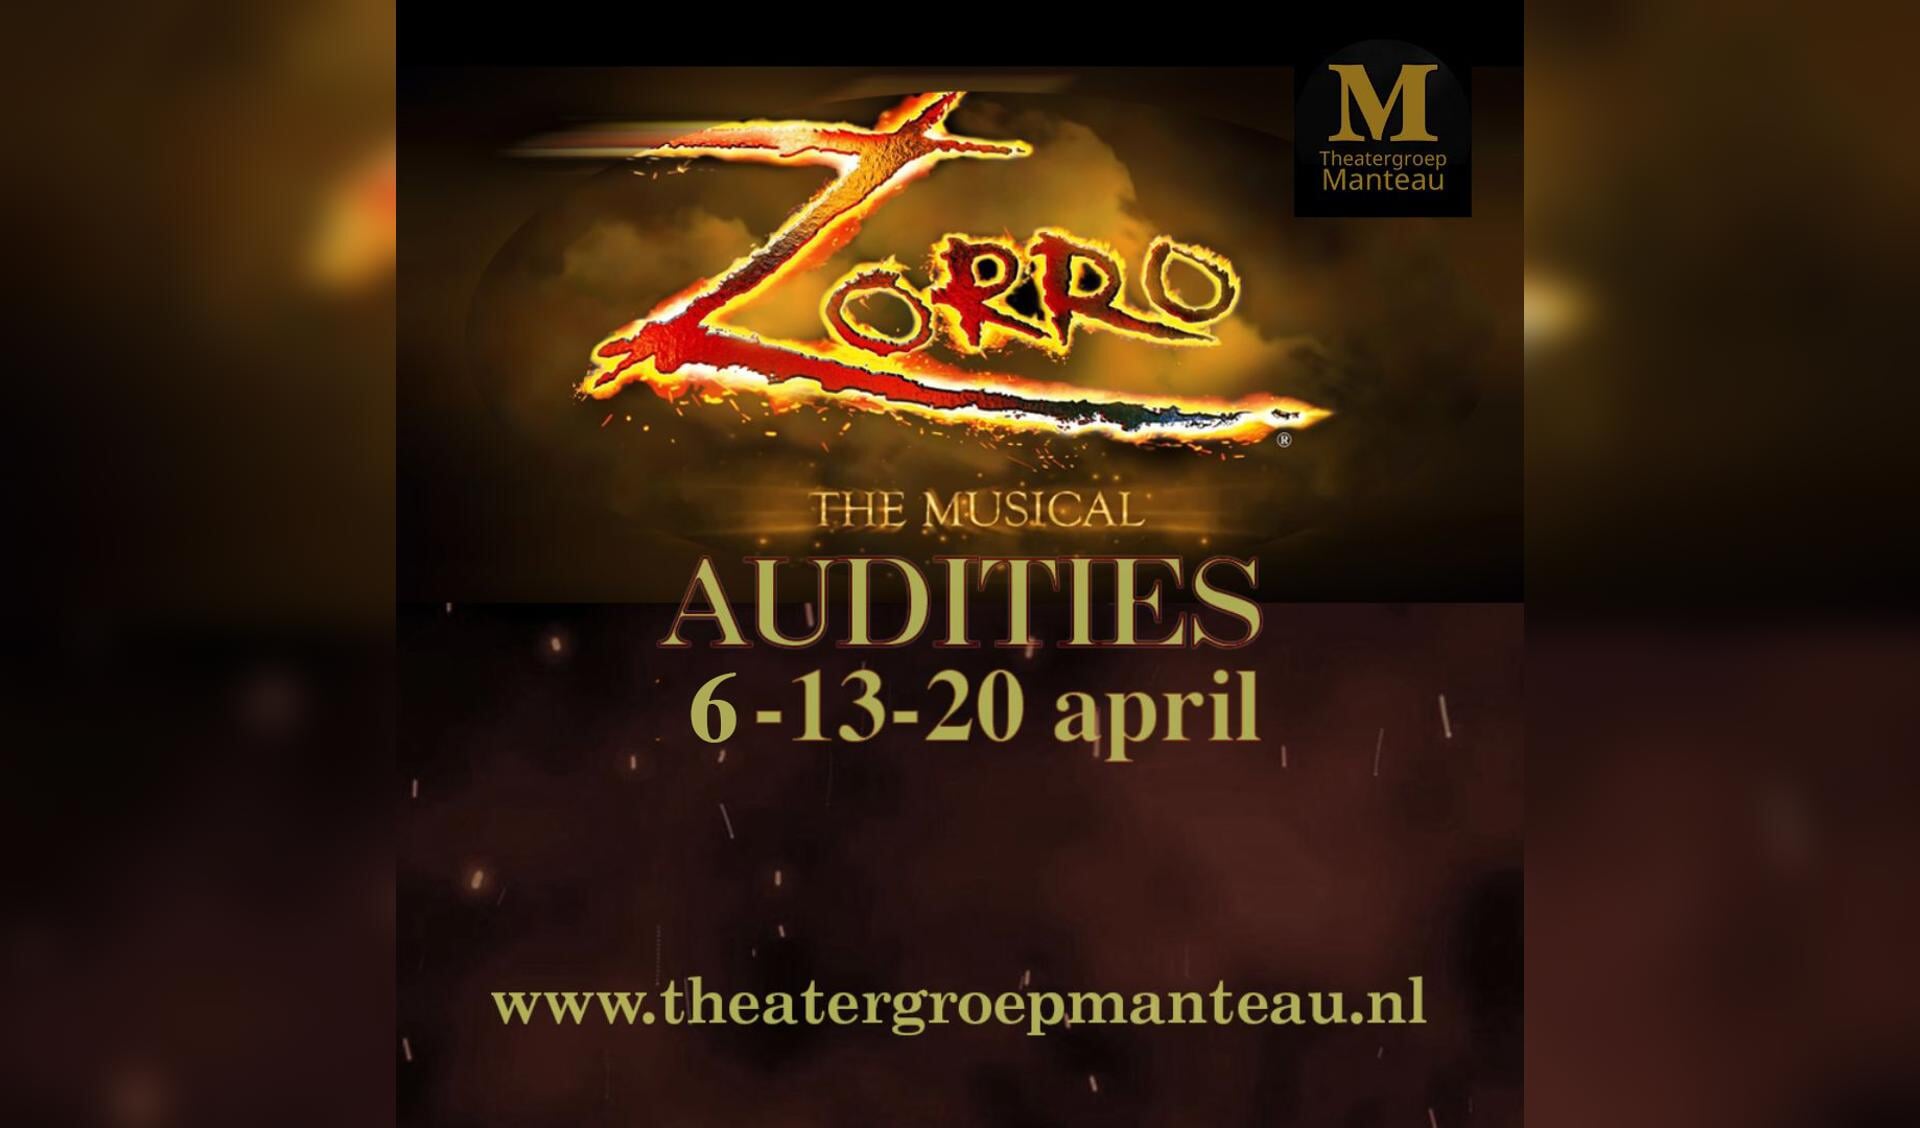 Audities Musical Zorro